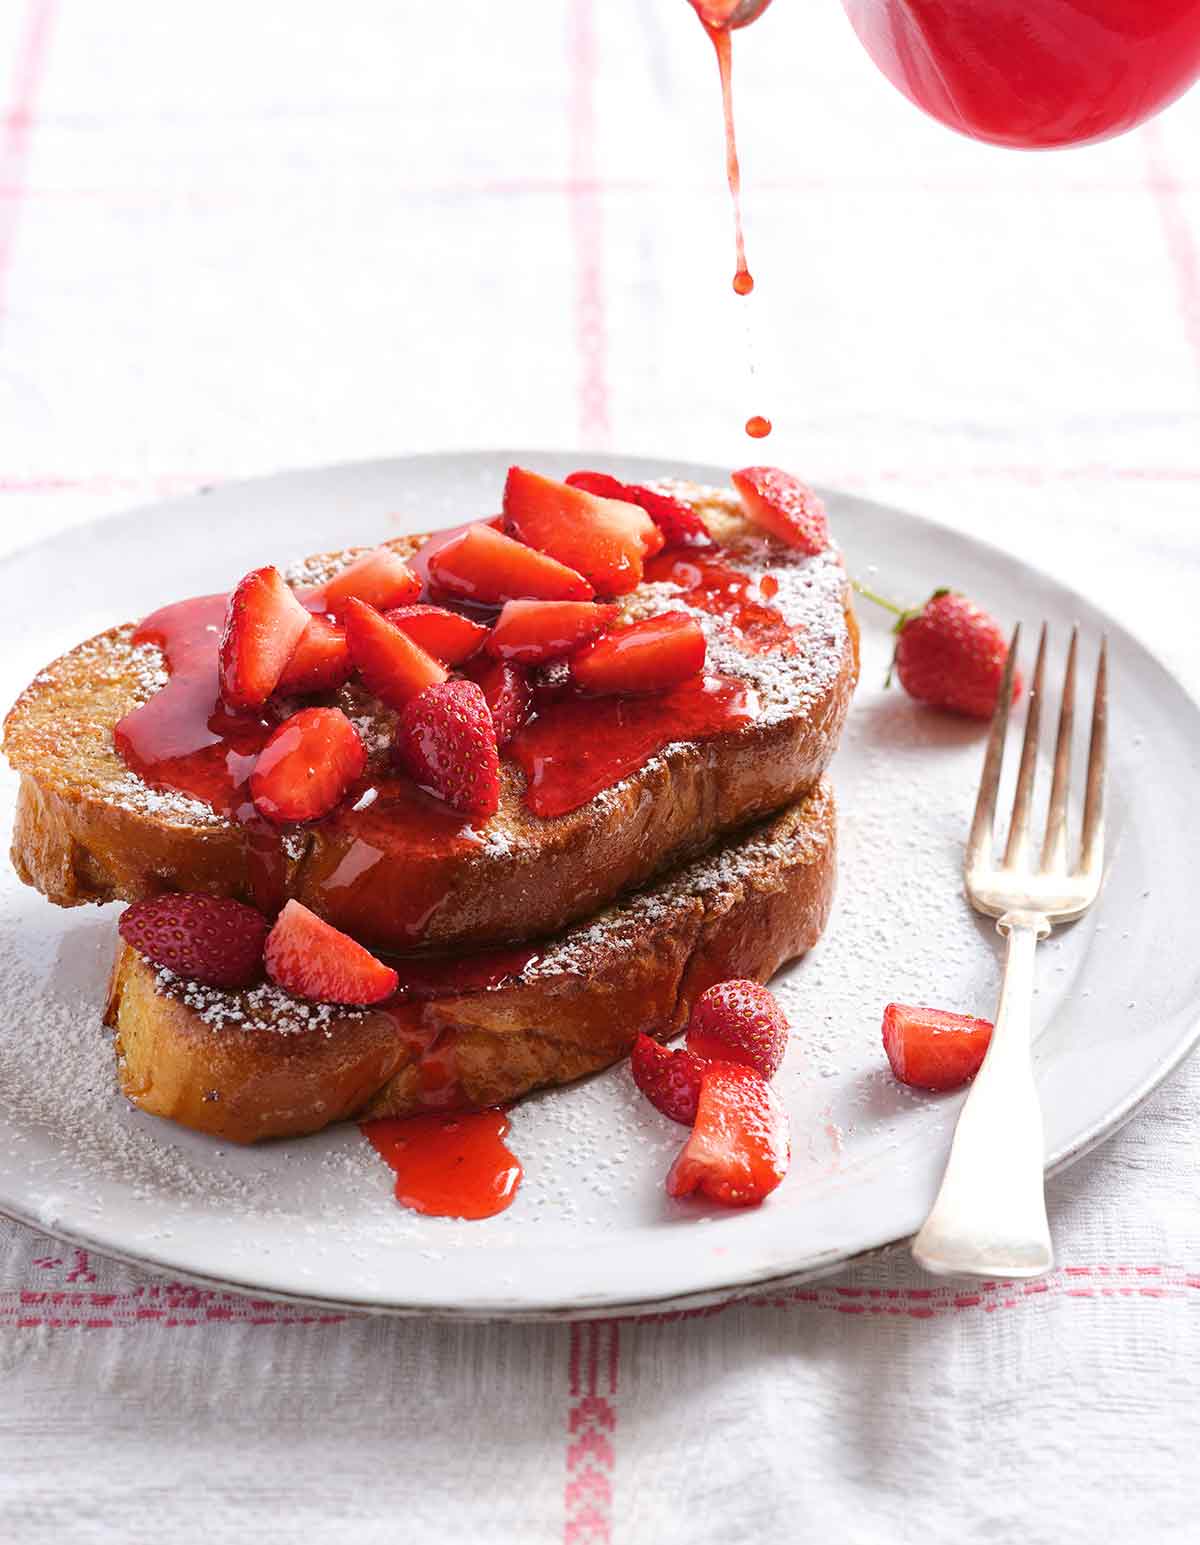 En vit tallrik med 2 bitar challah-franska toast täckt med färska jordgubbar, florsocker och drypps med jordgubbssirap.